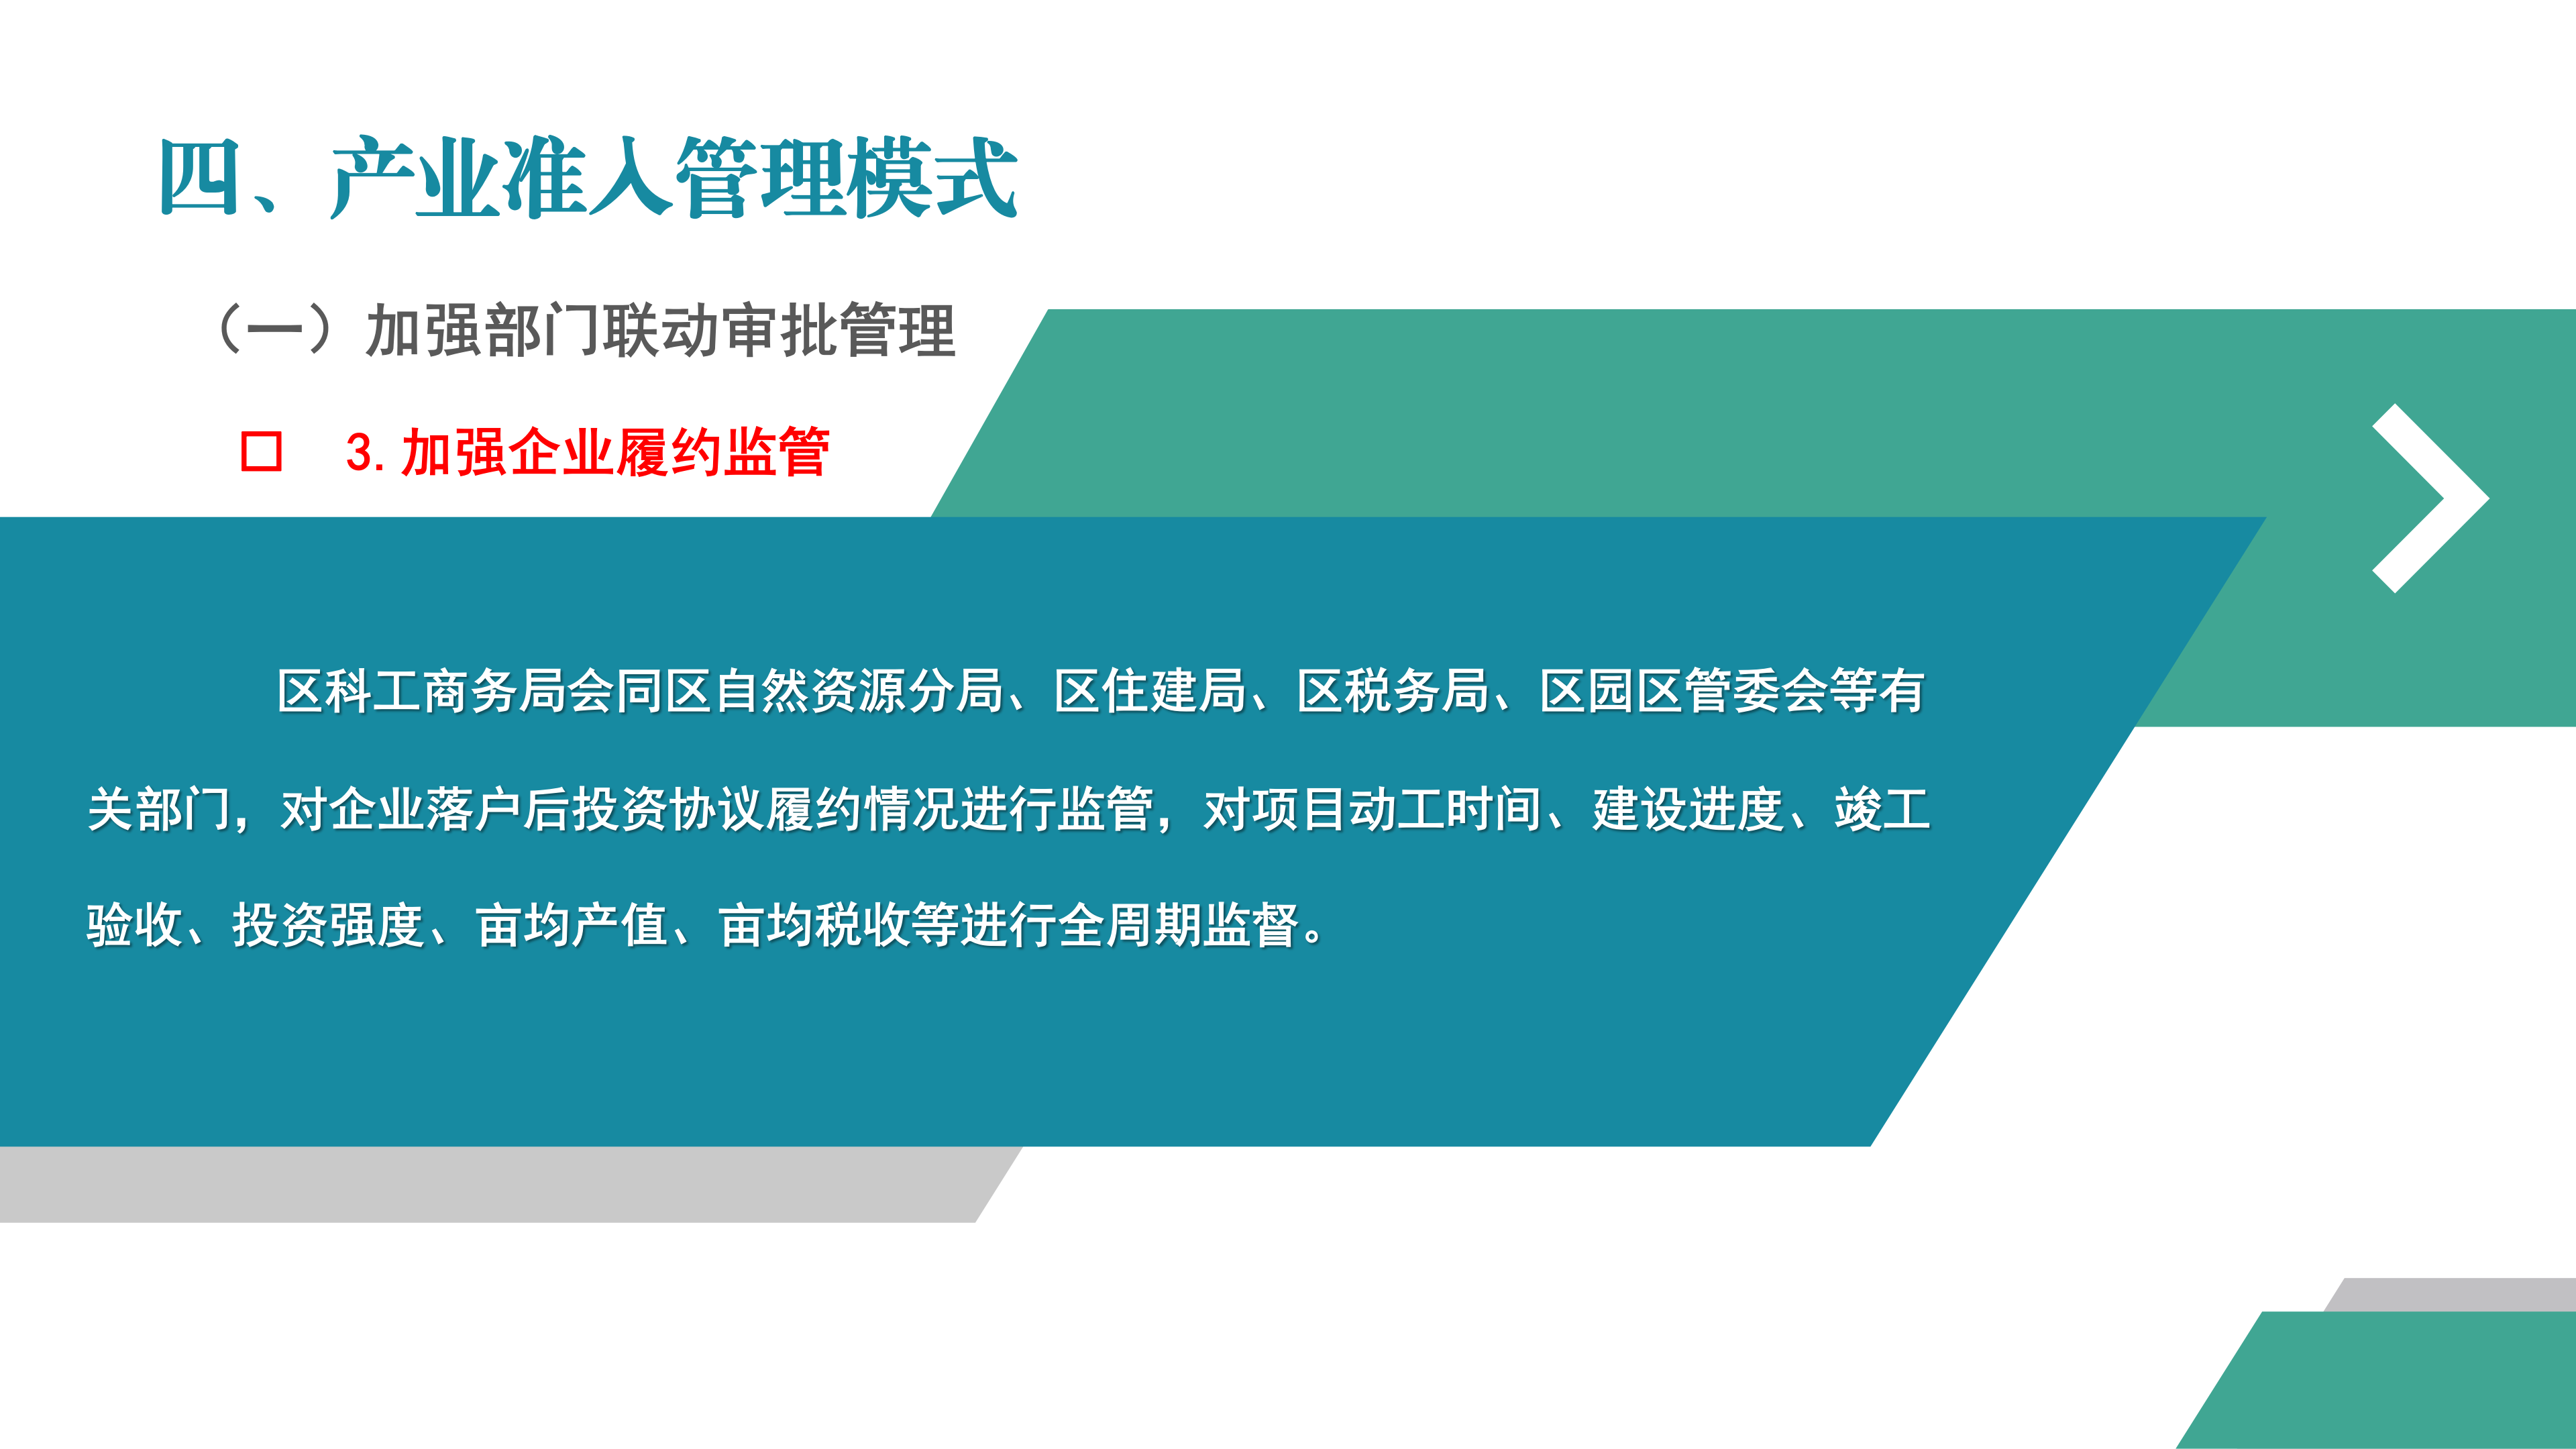 梅县区产业集聚地产业项目准入管理办法（试行）政策解读_15.png